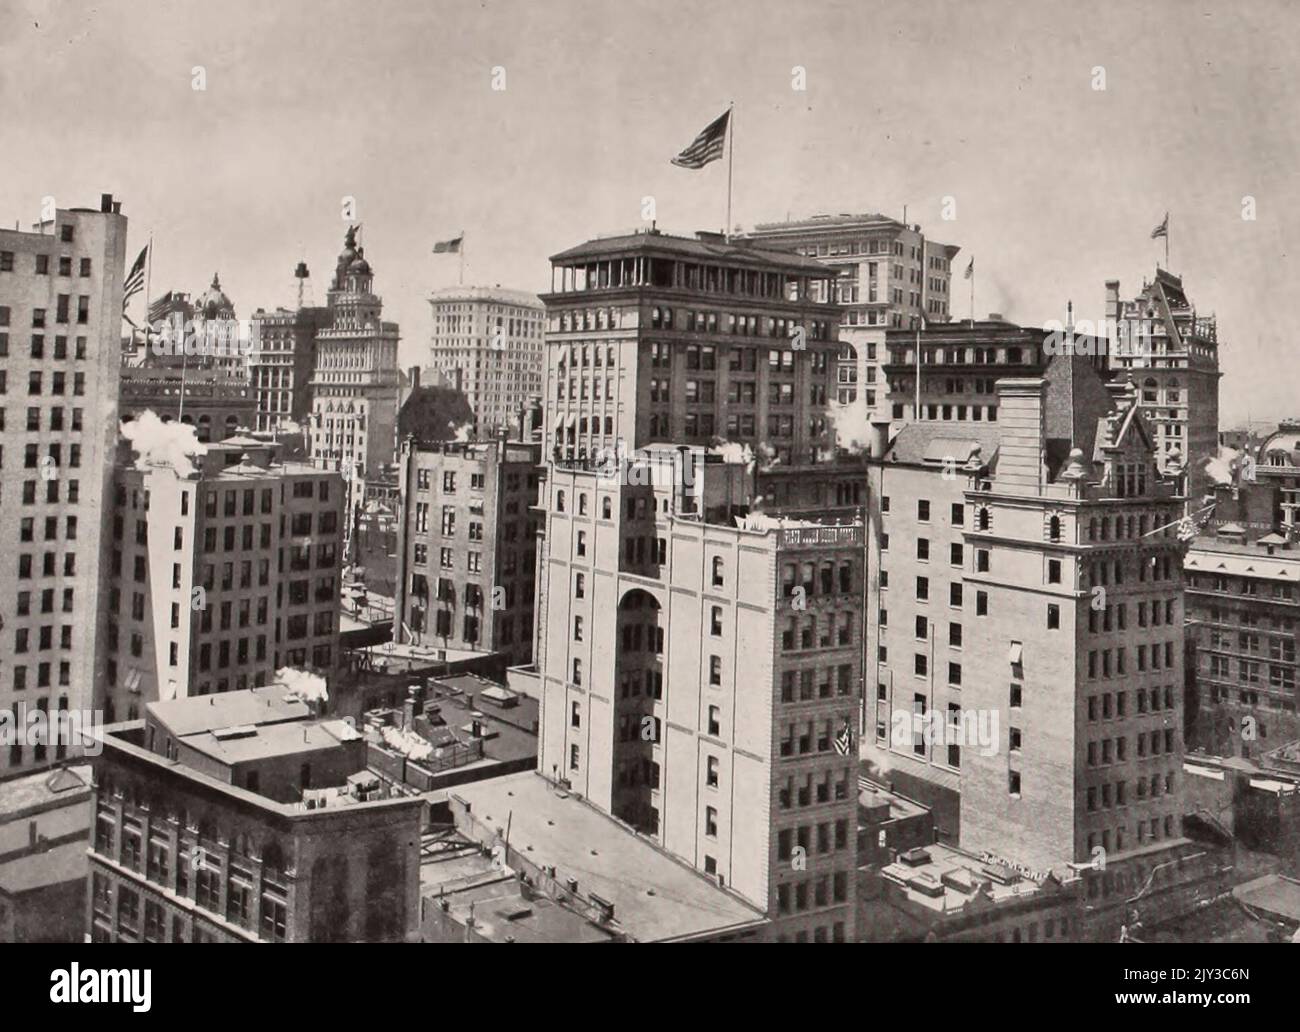 Vue vers le sud-ouest depuis le toit du Woodbridge Building, Corner of John Street et William Street, New York City, vers 1900 Banque D'Images